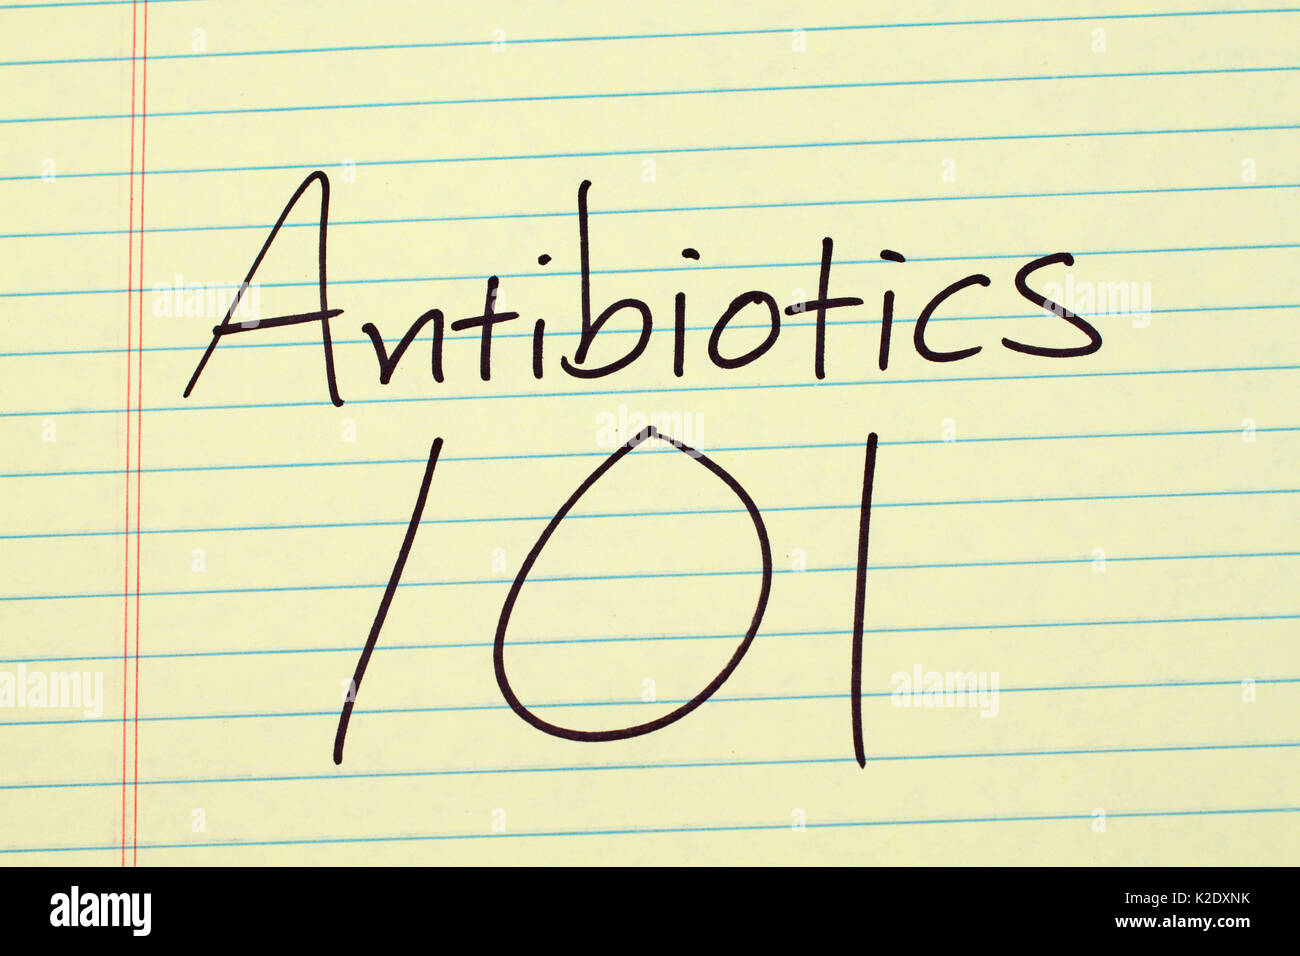 Las palabras "Antibióticos 101' en un bloc de notas de papel amarillo Foto de stock